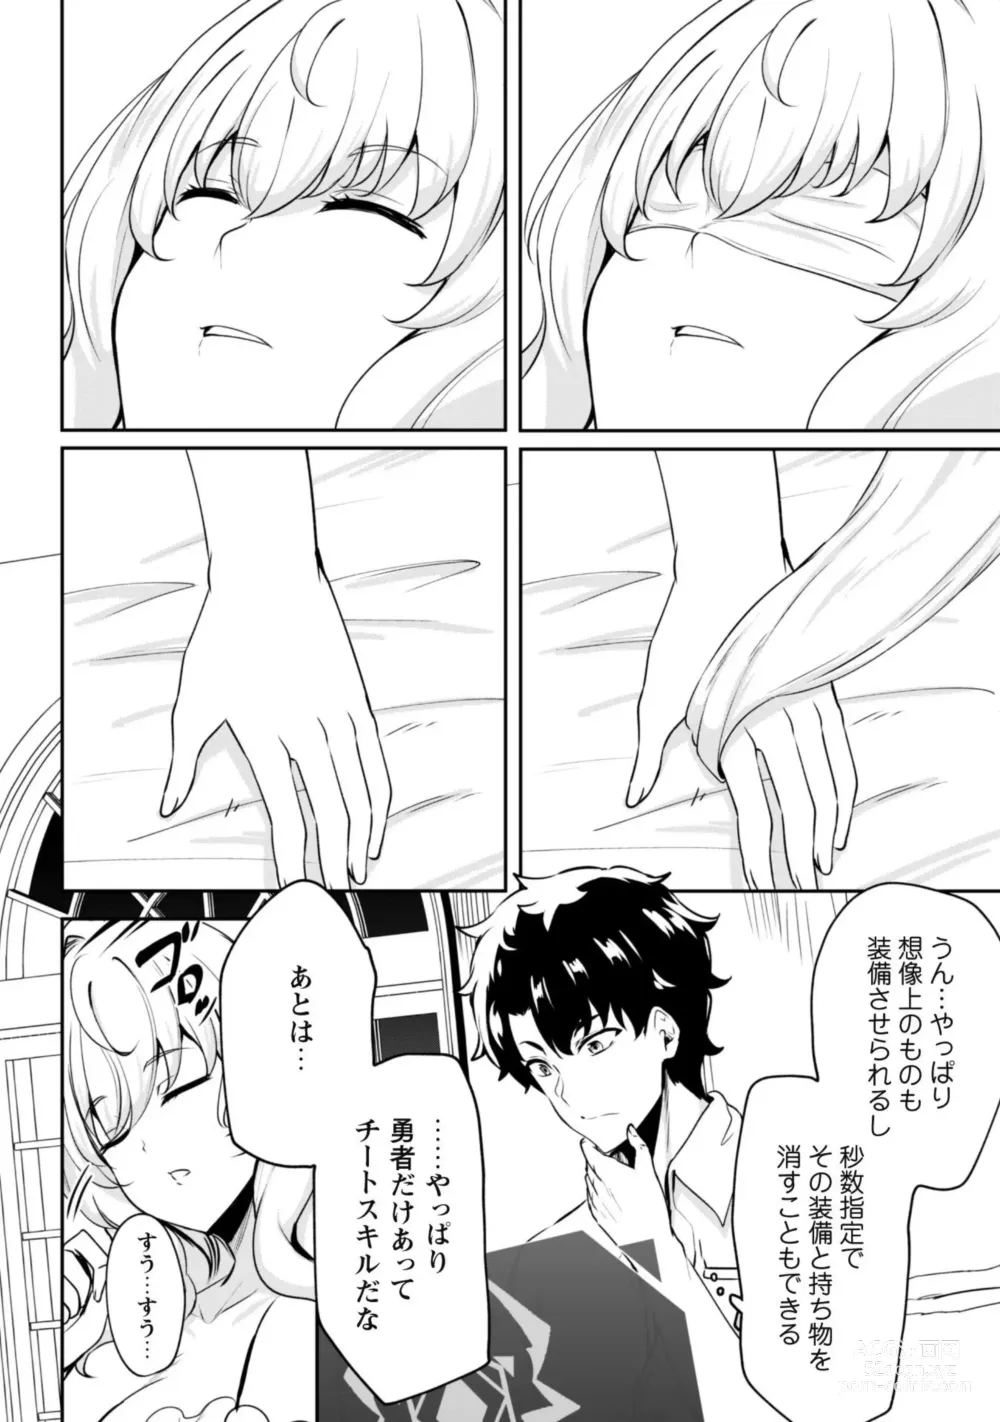 Page 52 of manga Hangyaku no Yūsha 〜 Sukiru o Tsukatte Haraguro ōjo no Kokoro to Karada o Shōaku seyo 〜 1-2